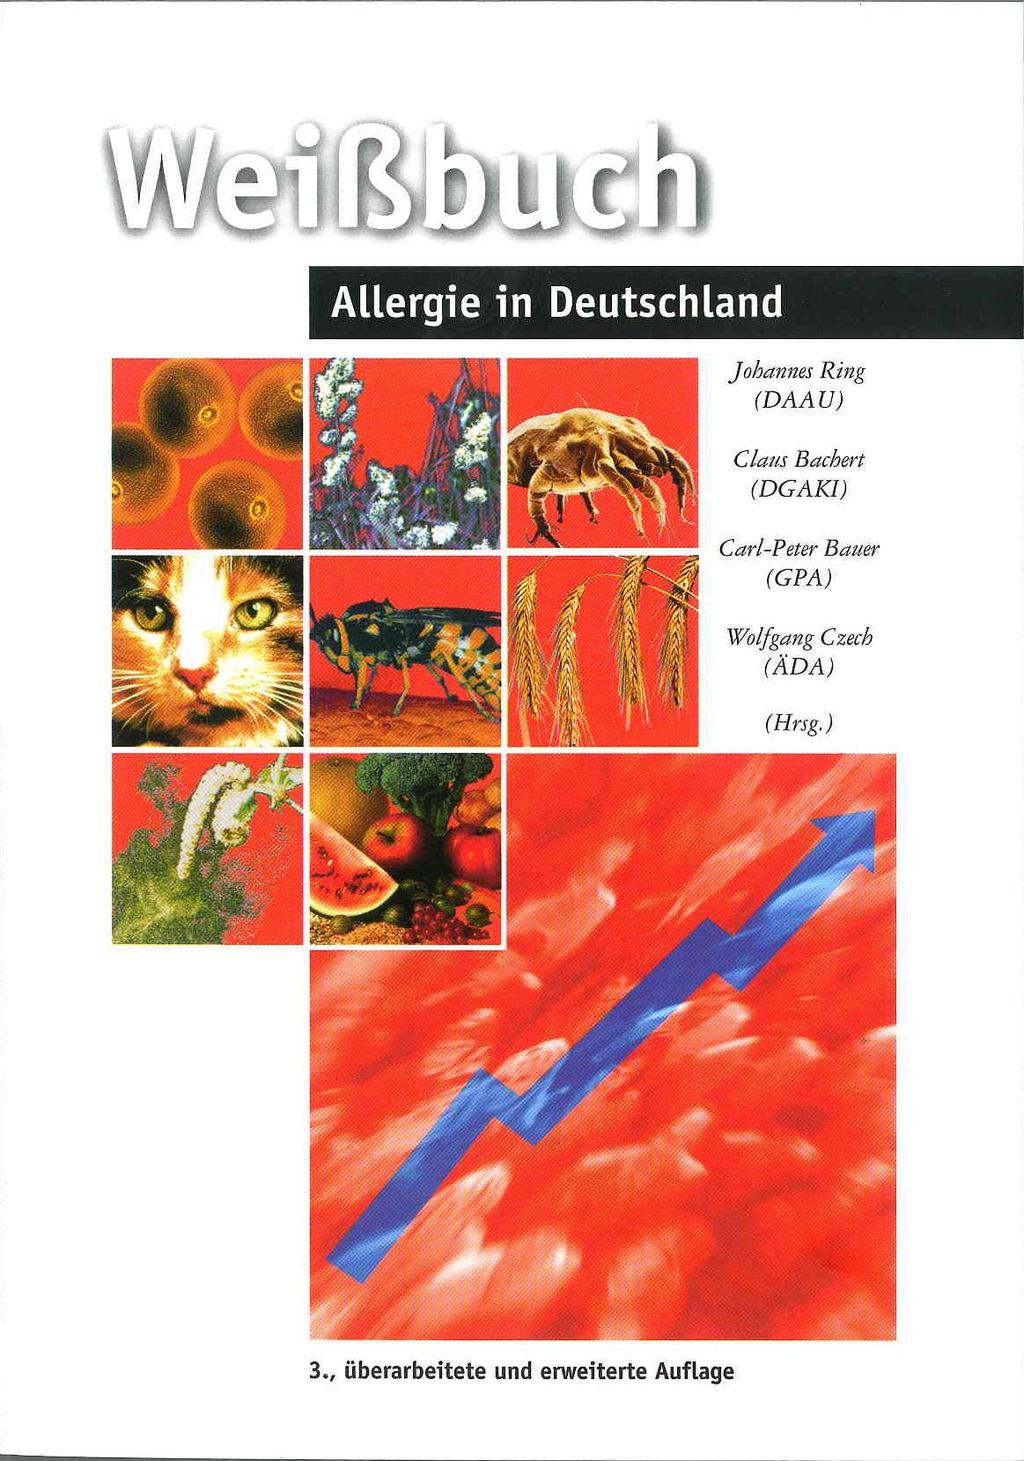 Allergische Erkrankungen nehmen weiter zu 20 bis 30 Mio. Bundesbürger sind betroffen.